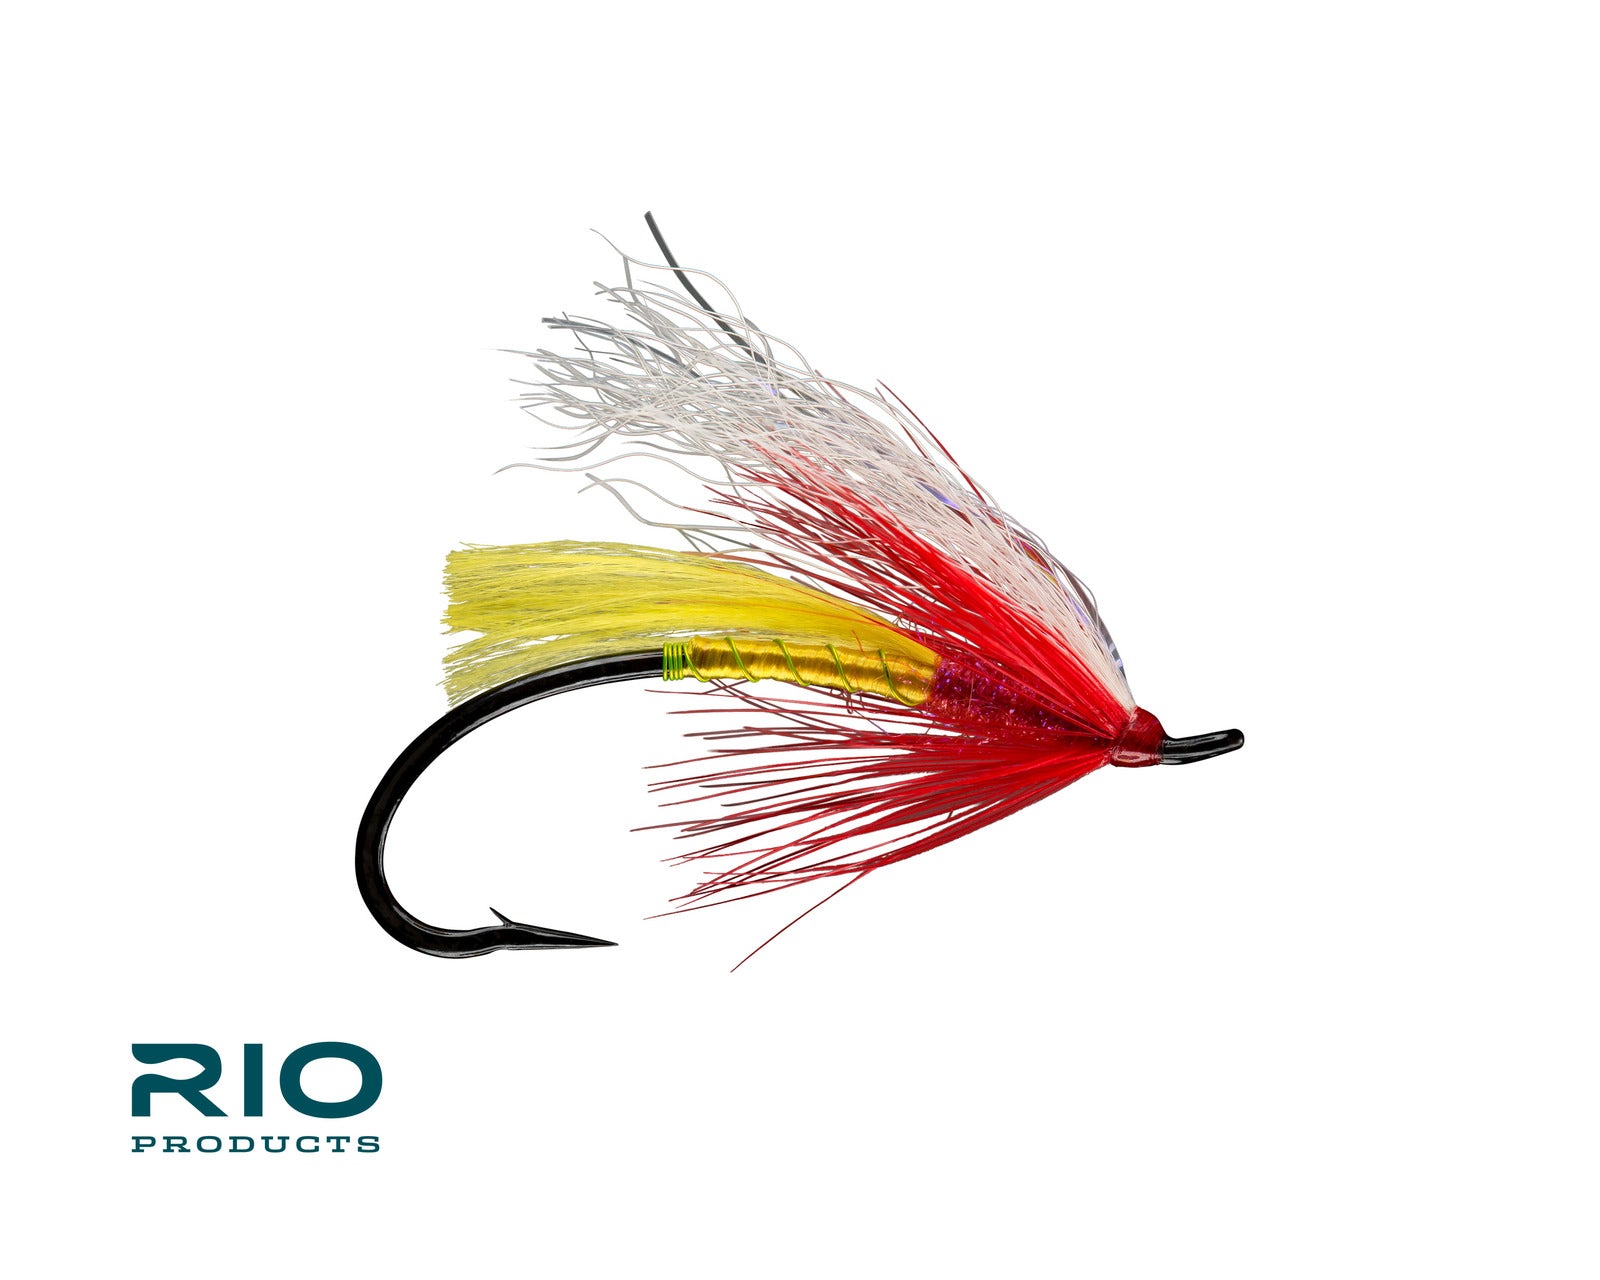 RIO's Sno Cone #3 in Red & Yellow